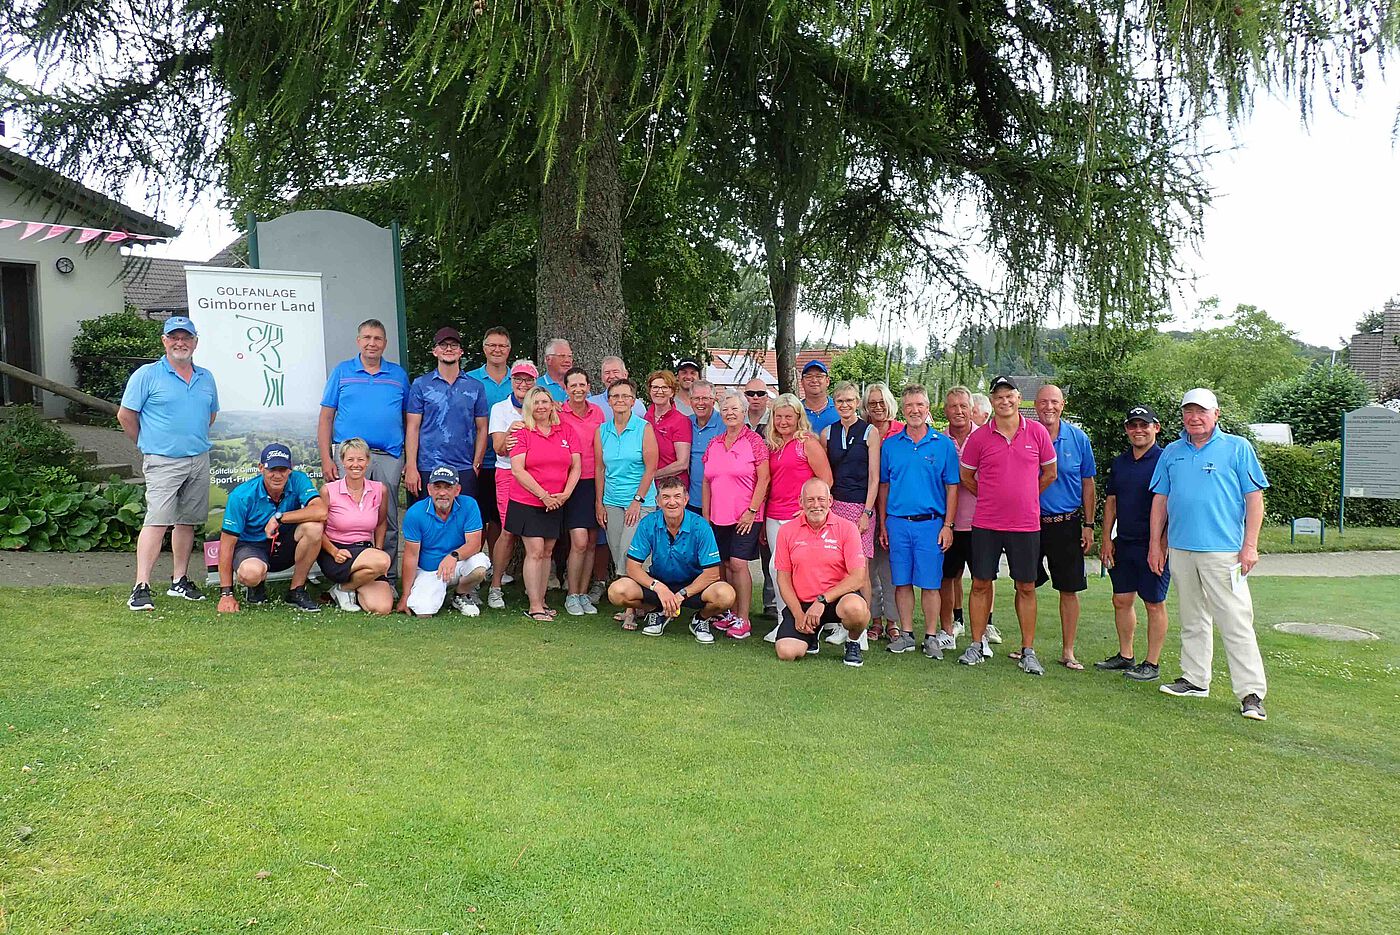 Männer und Frauen nach dem Golf Spielen in pink und blau als Gruppe vor einem Baum.